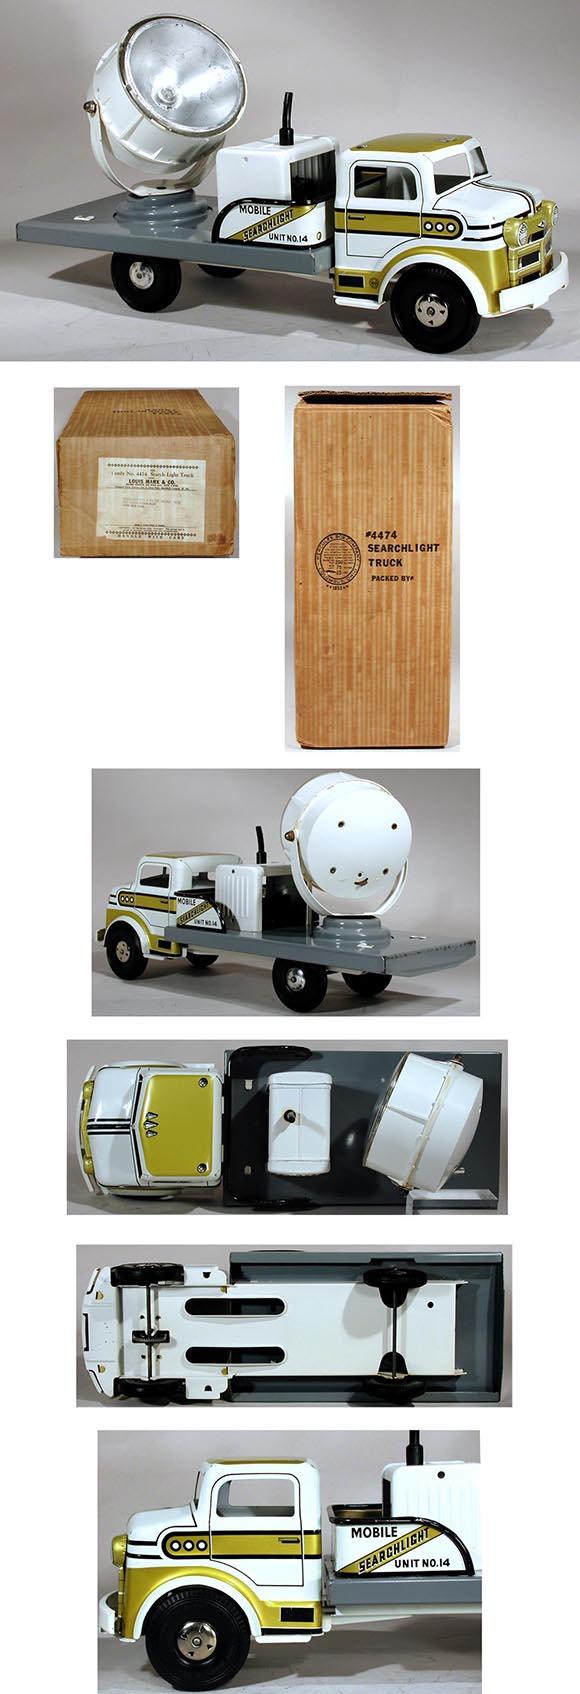 1955 Marx, No.4474 Mobile Searchlight Truck in Original Box